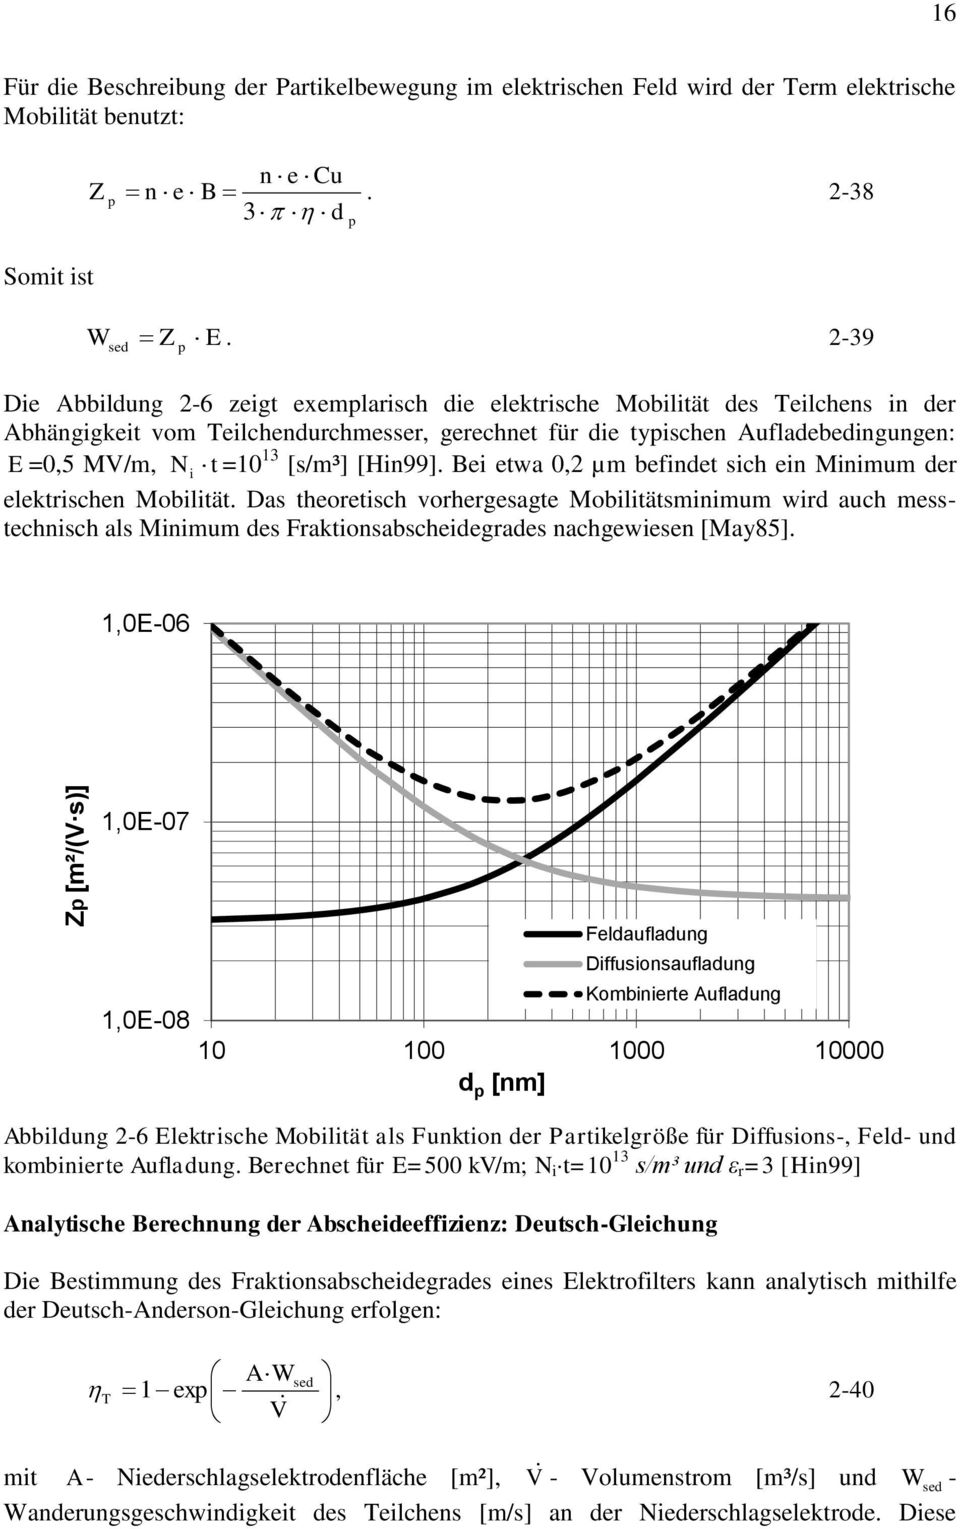 Das theoetisch vohegesagte Mobilitätsminimum wid auch messtechnisch als Minimum des Faktionsabscheidegades nachgewiesen [May85]. N i t =1 13 [s/m³] [Hin99].